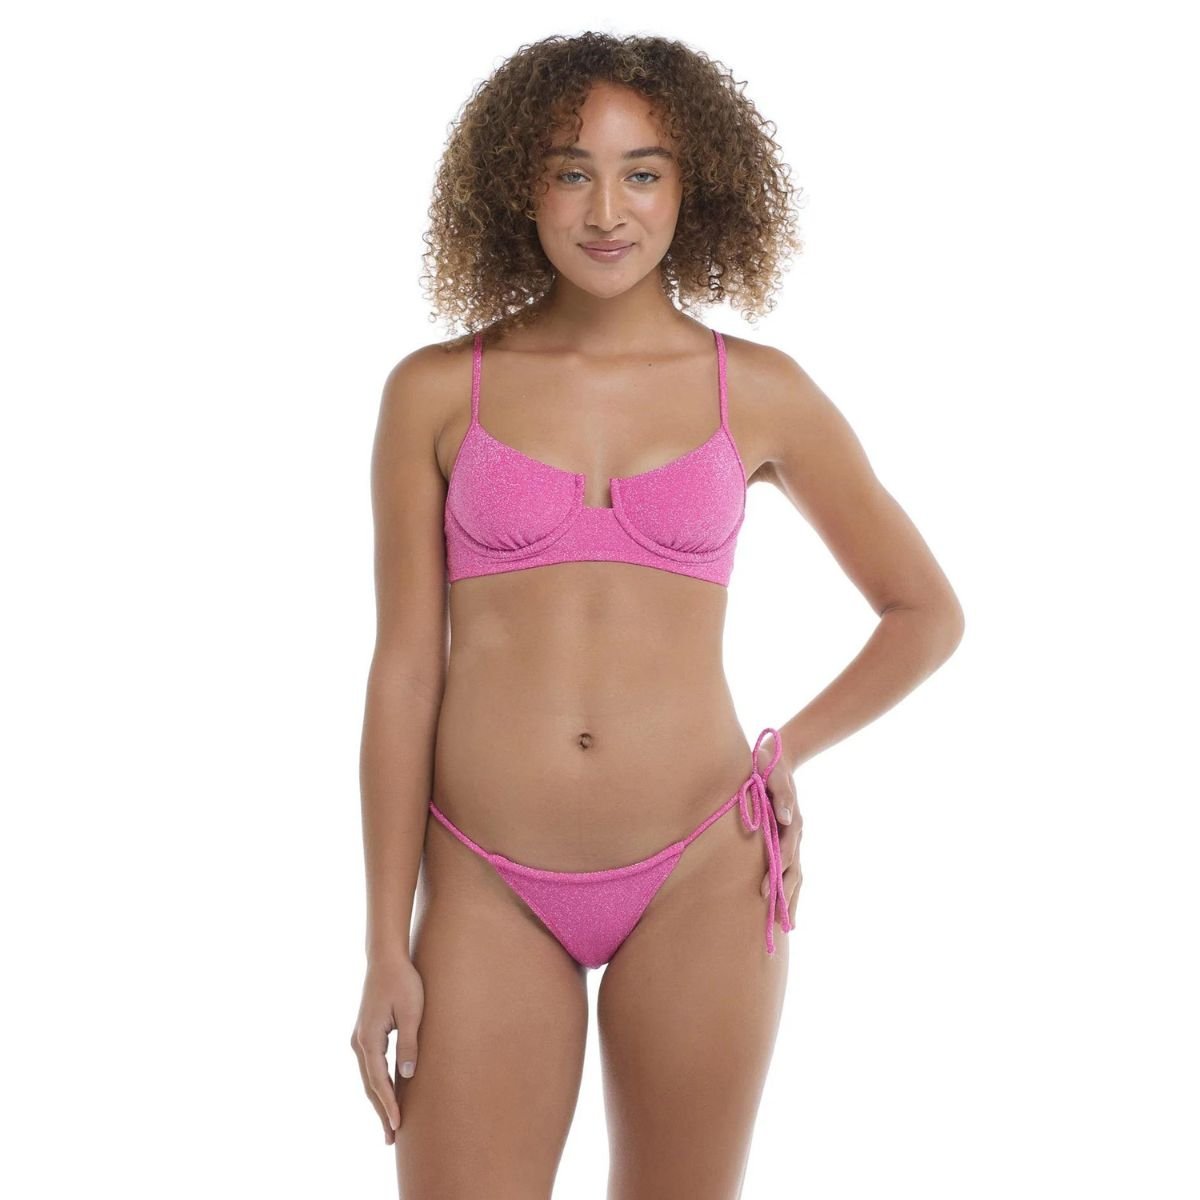 Body Glove Sparkle Cabana Bikini Bottom in Pink - BoardCo